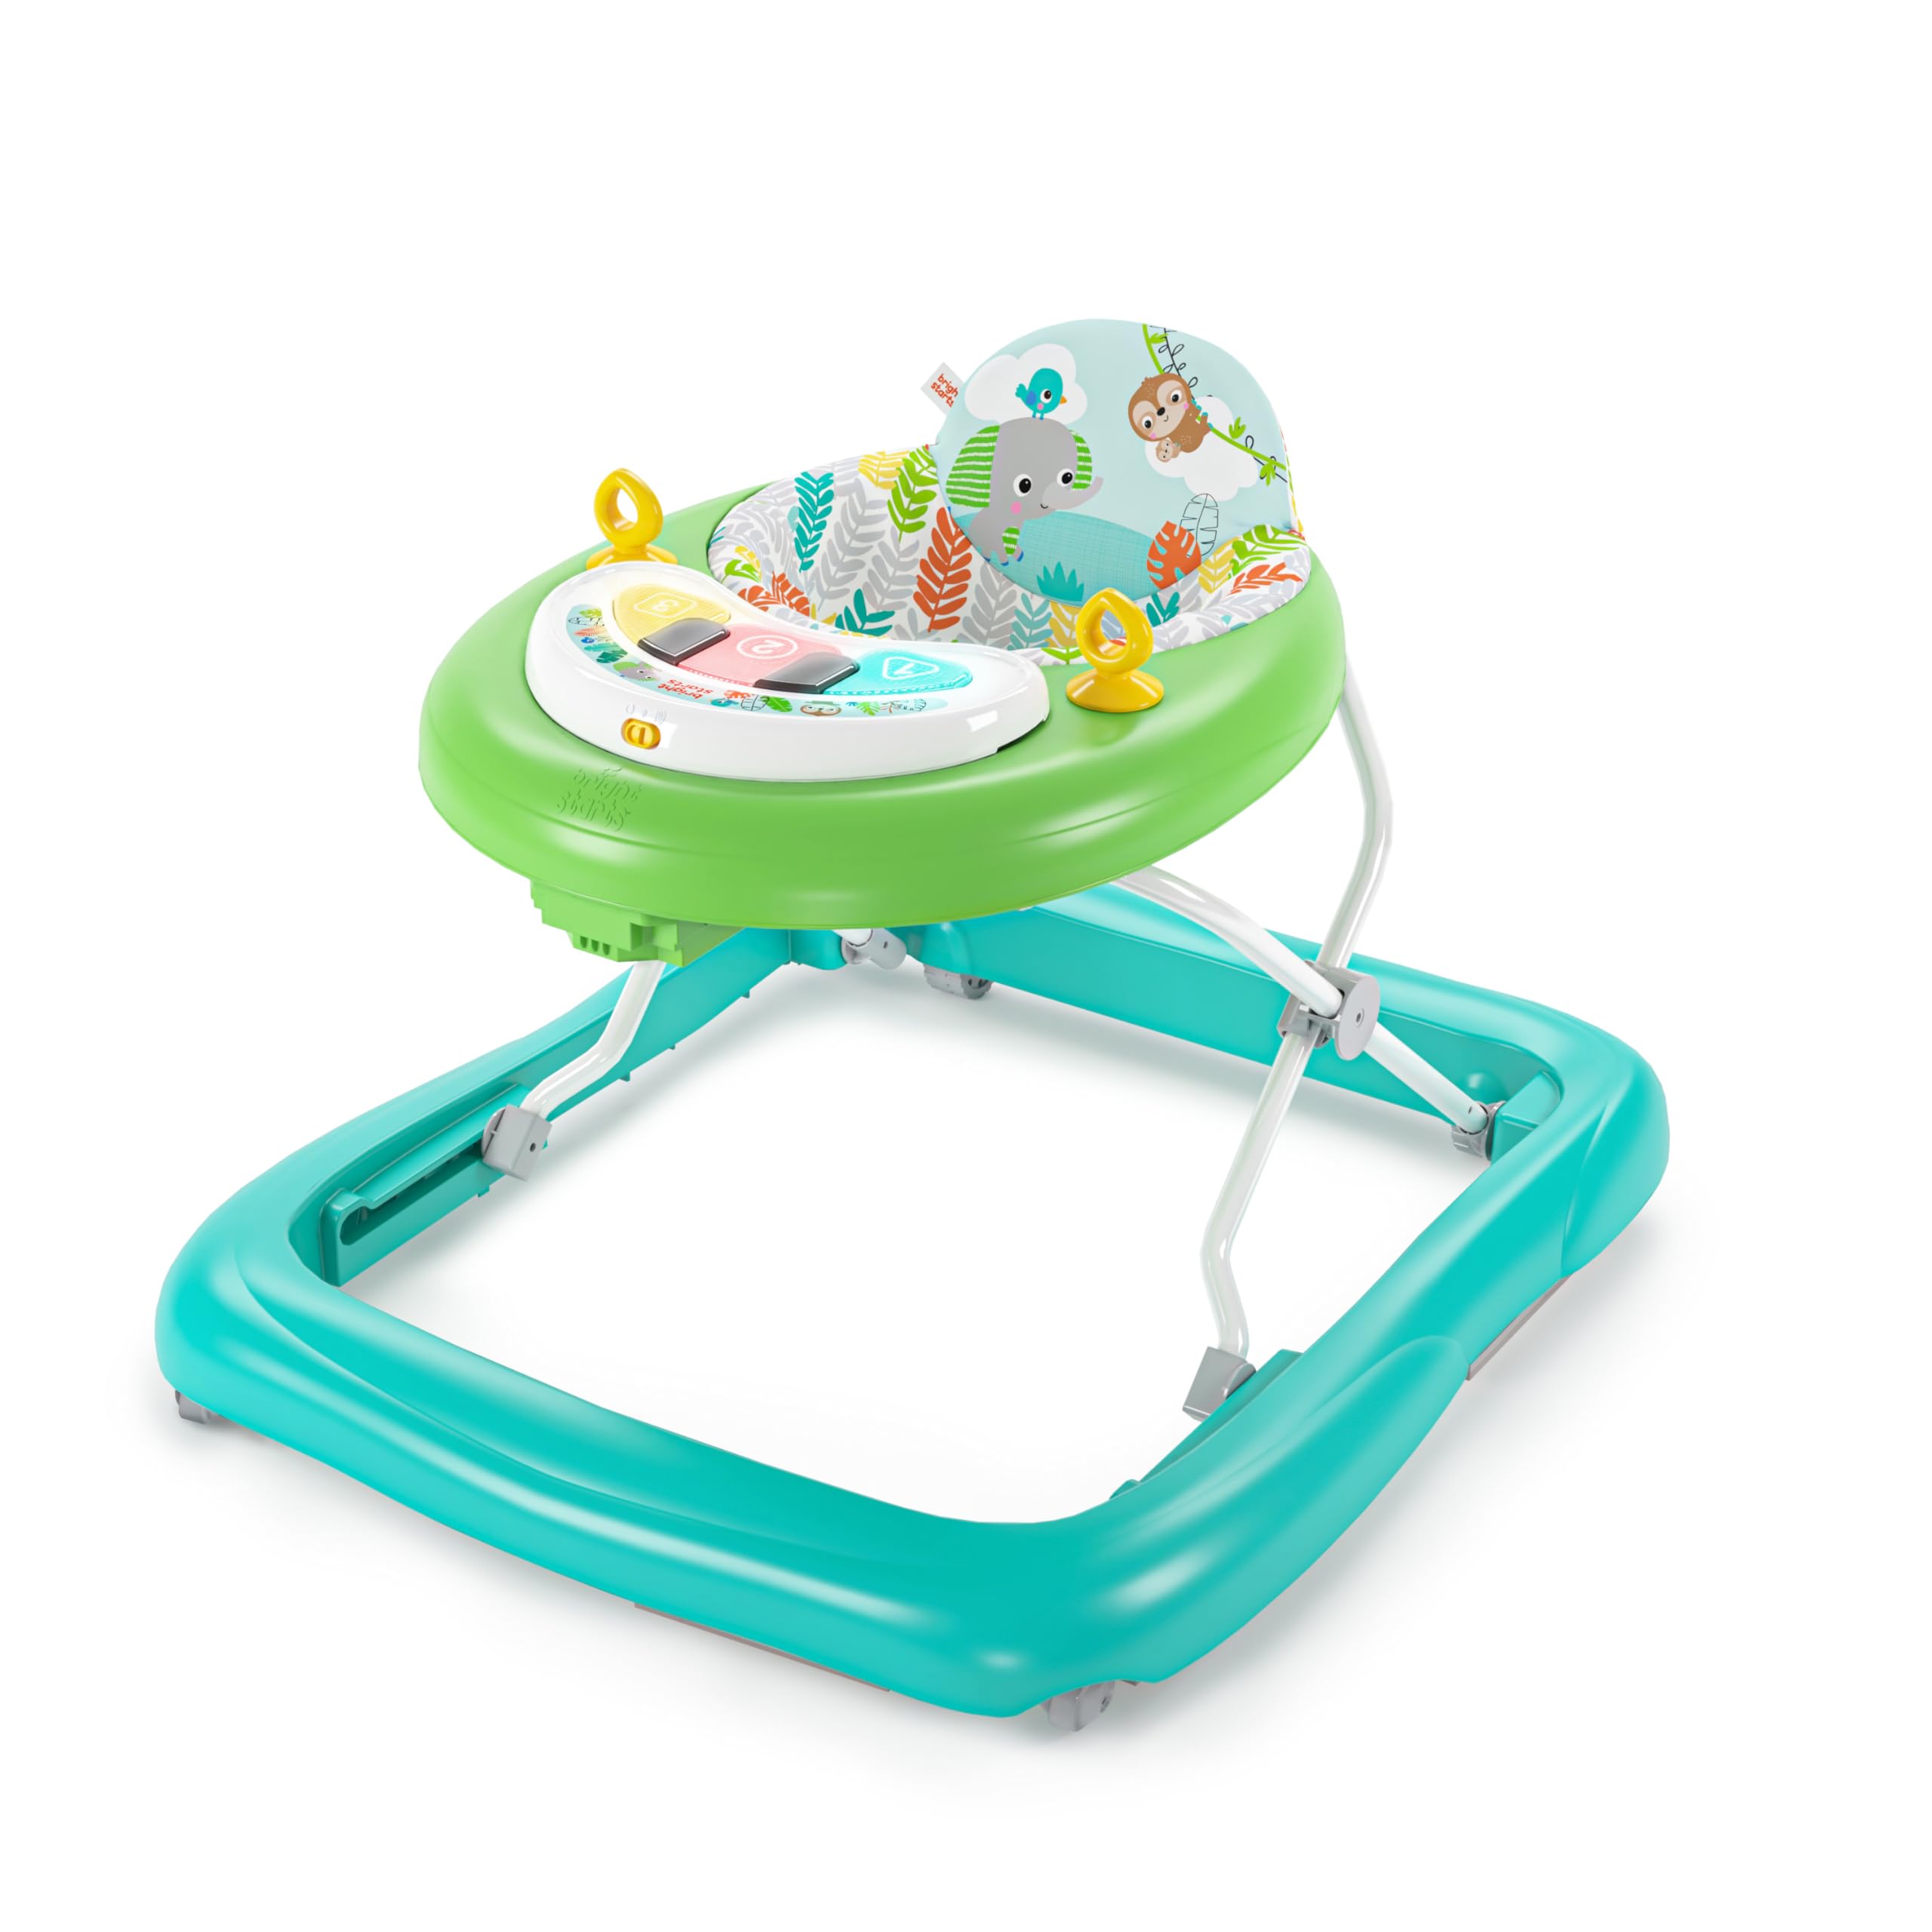 Bright Starts, Tiny Trek 2-in-1 Baby Aktivität Lauflernhilfe mit Spielzeugstation, verstellbarer Höhe und leicht faltbarem Rahmen, Dschungel Ranken Alter 6 Monate+